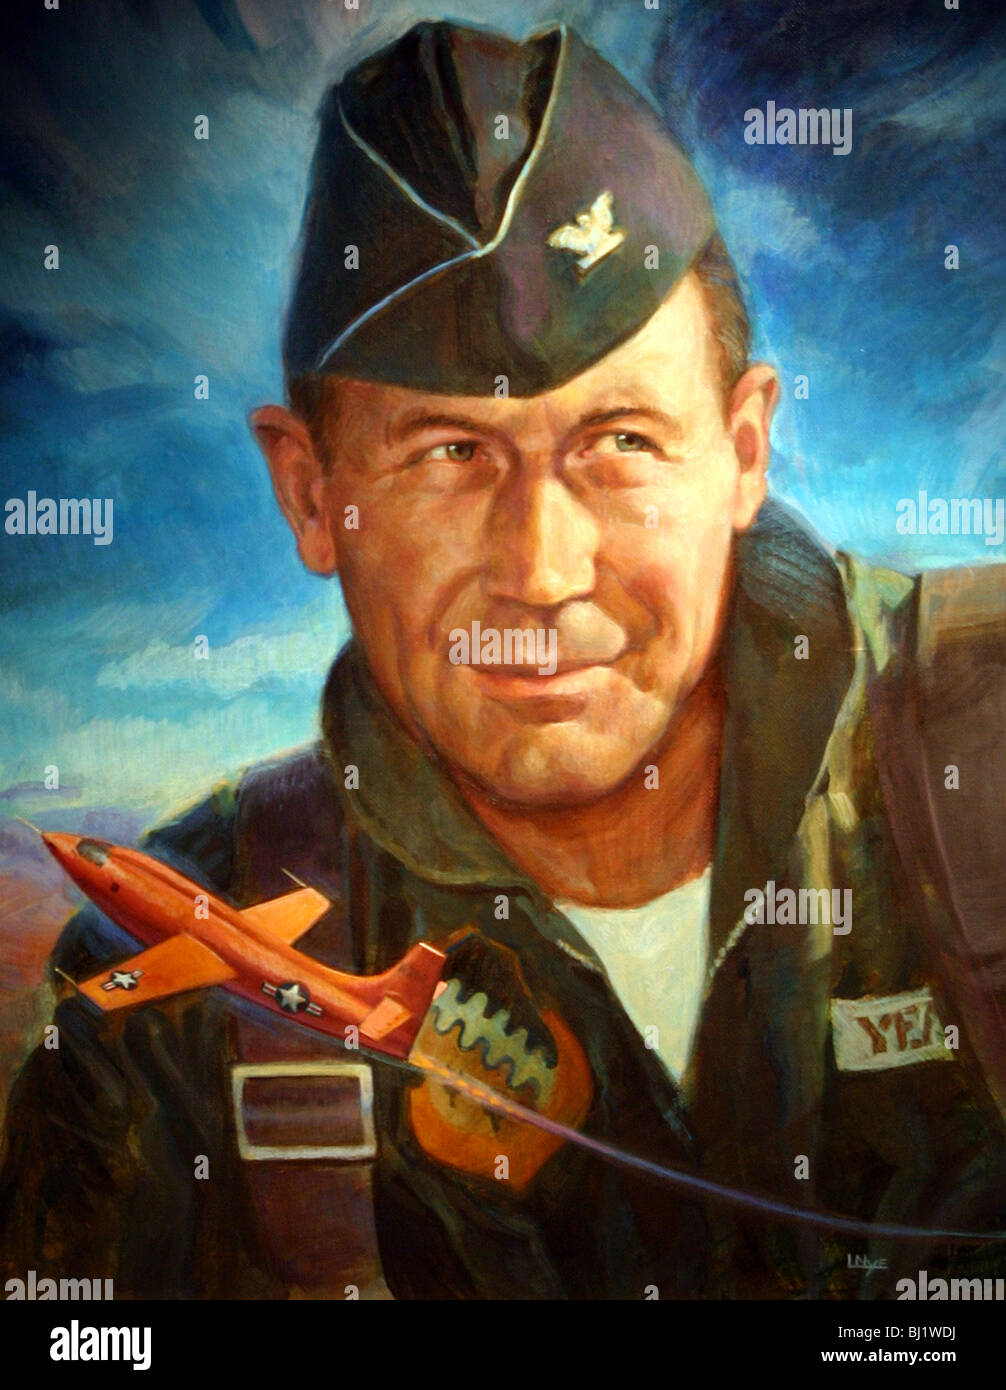 Il s'agit d'un portrait peint du célèbre aviateur américain Chuck Yeager. Pour être vendu pour un usage éditorial uniquement. Ce portrait Banque D'Images